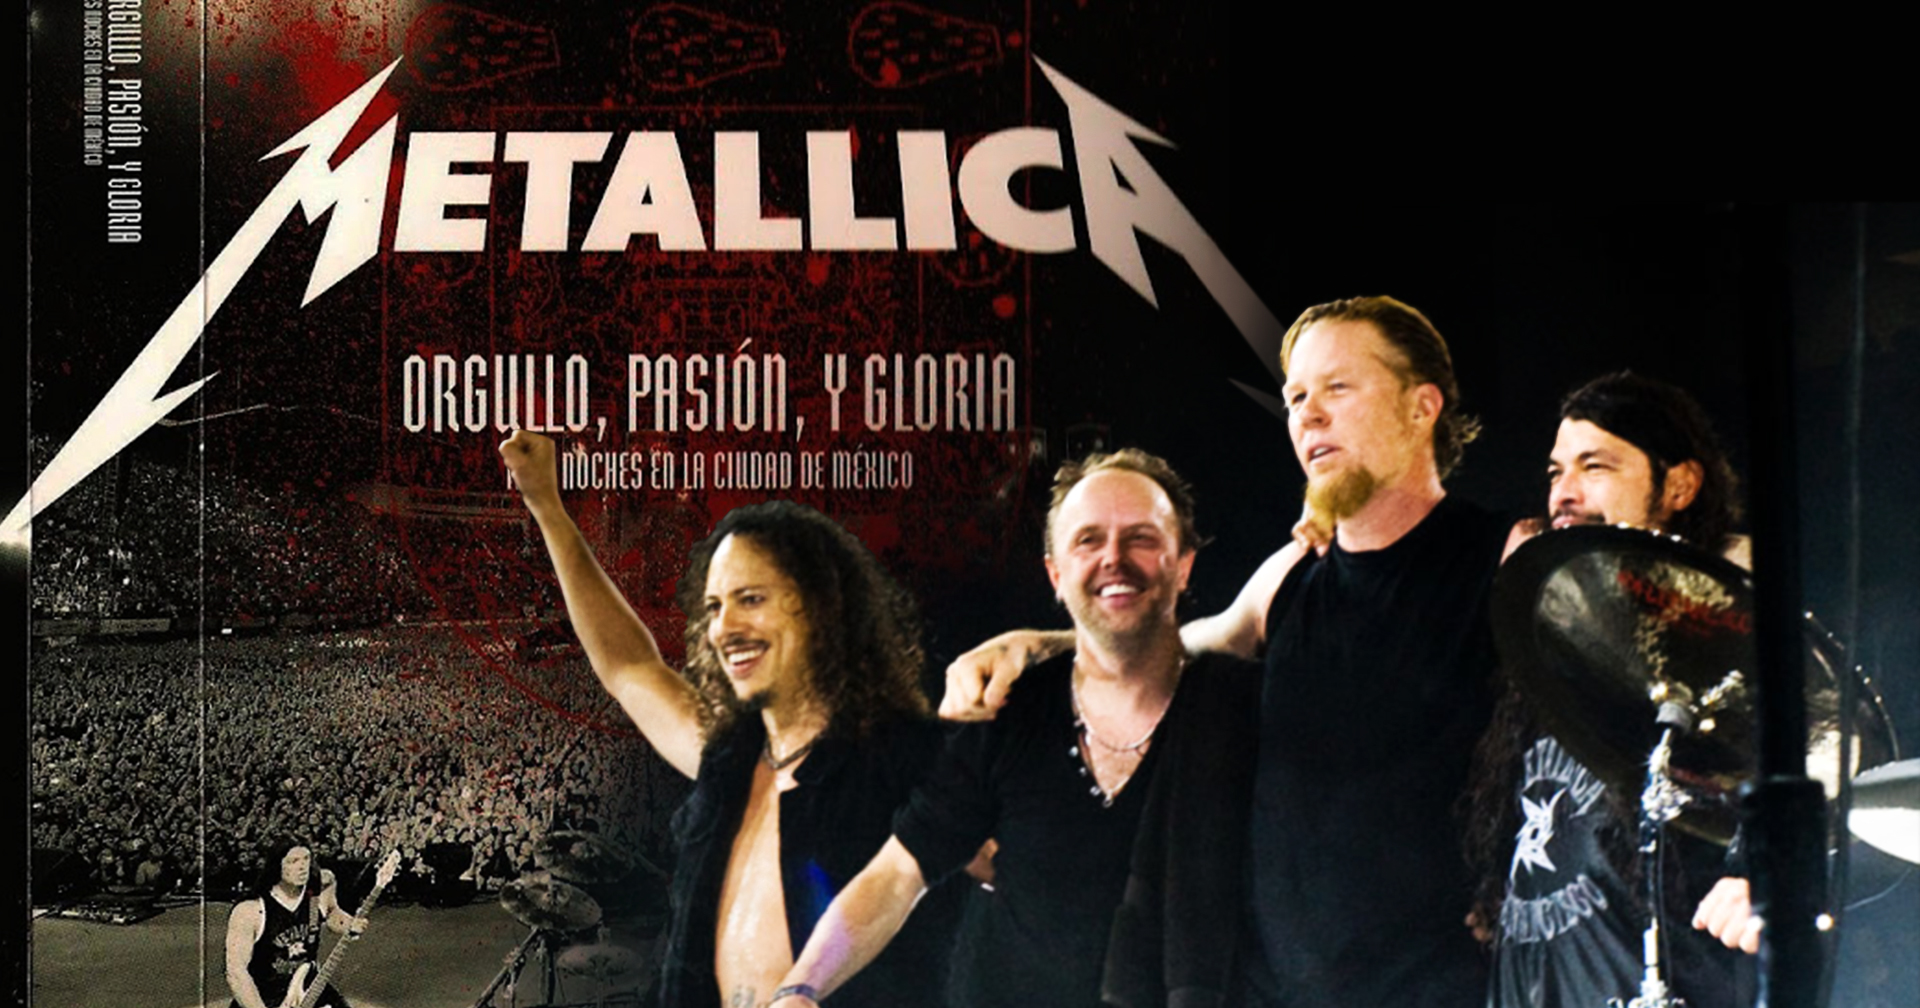 รู้จักวง ‘Metallica’ กับ ‘DVD ปริศนา’ ที่คนนำโยงปมคดี ‘แตงโม’